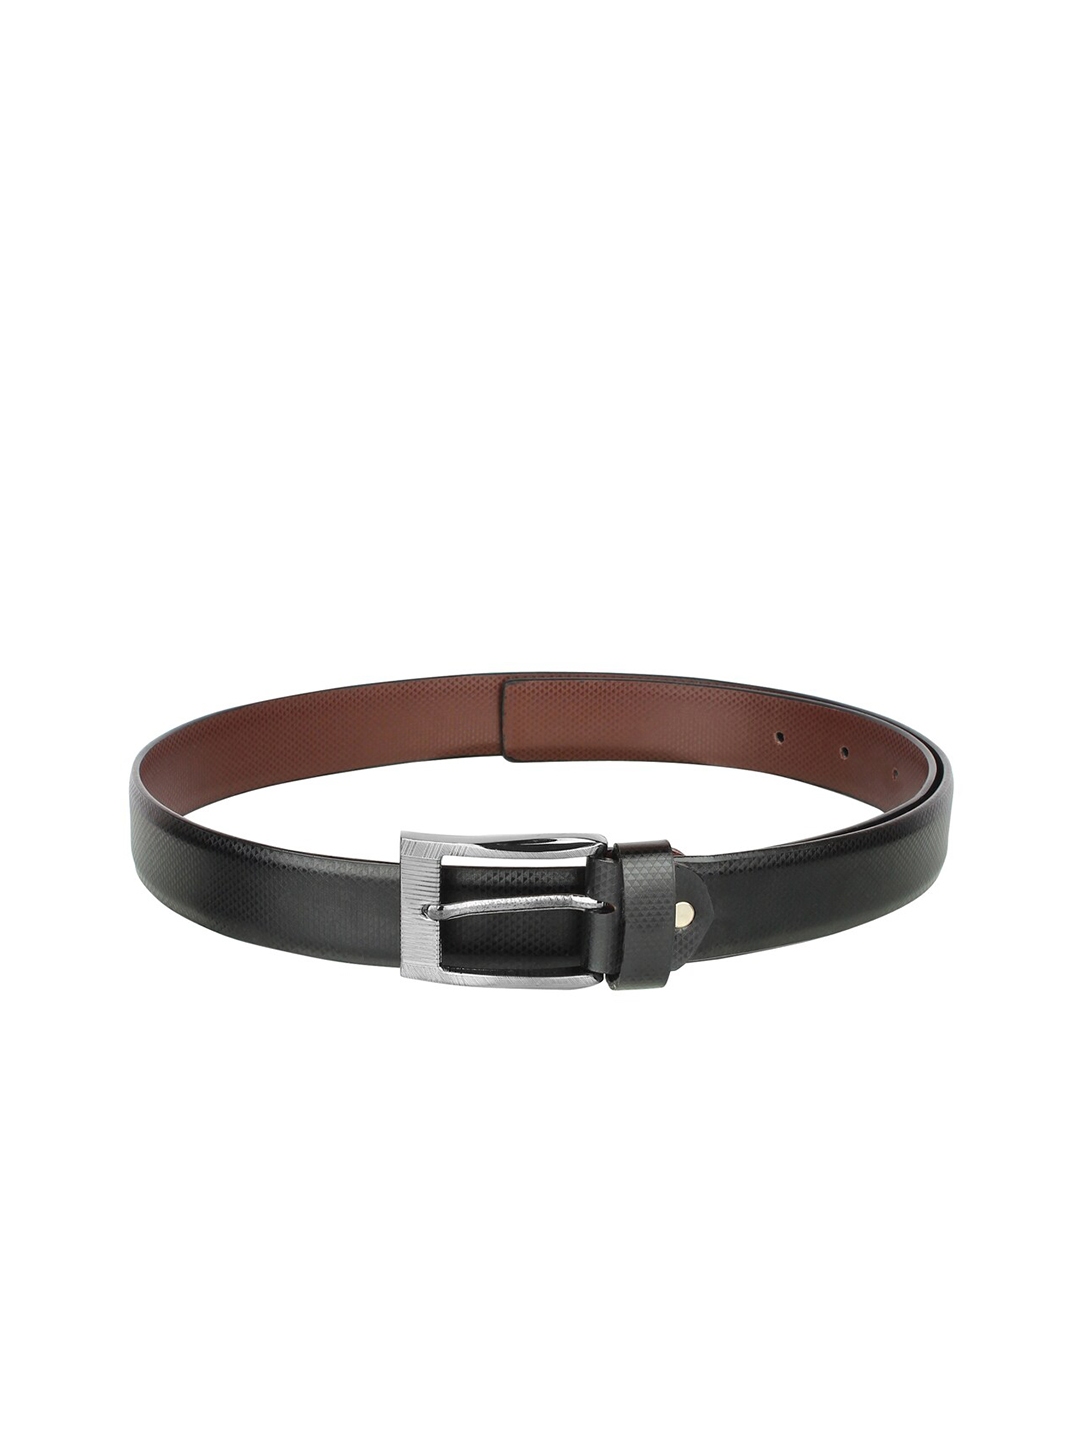 Buy Swiss Design Men Black Textured Leather Formal Belt - Belts for Men ...